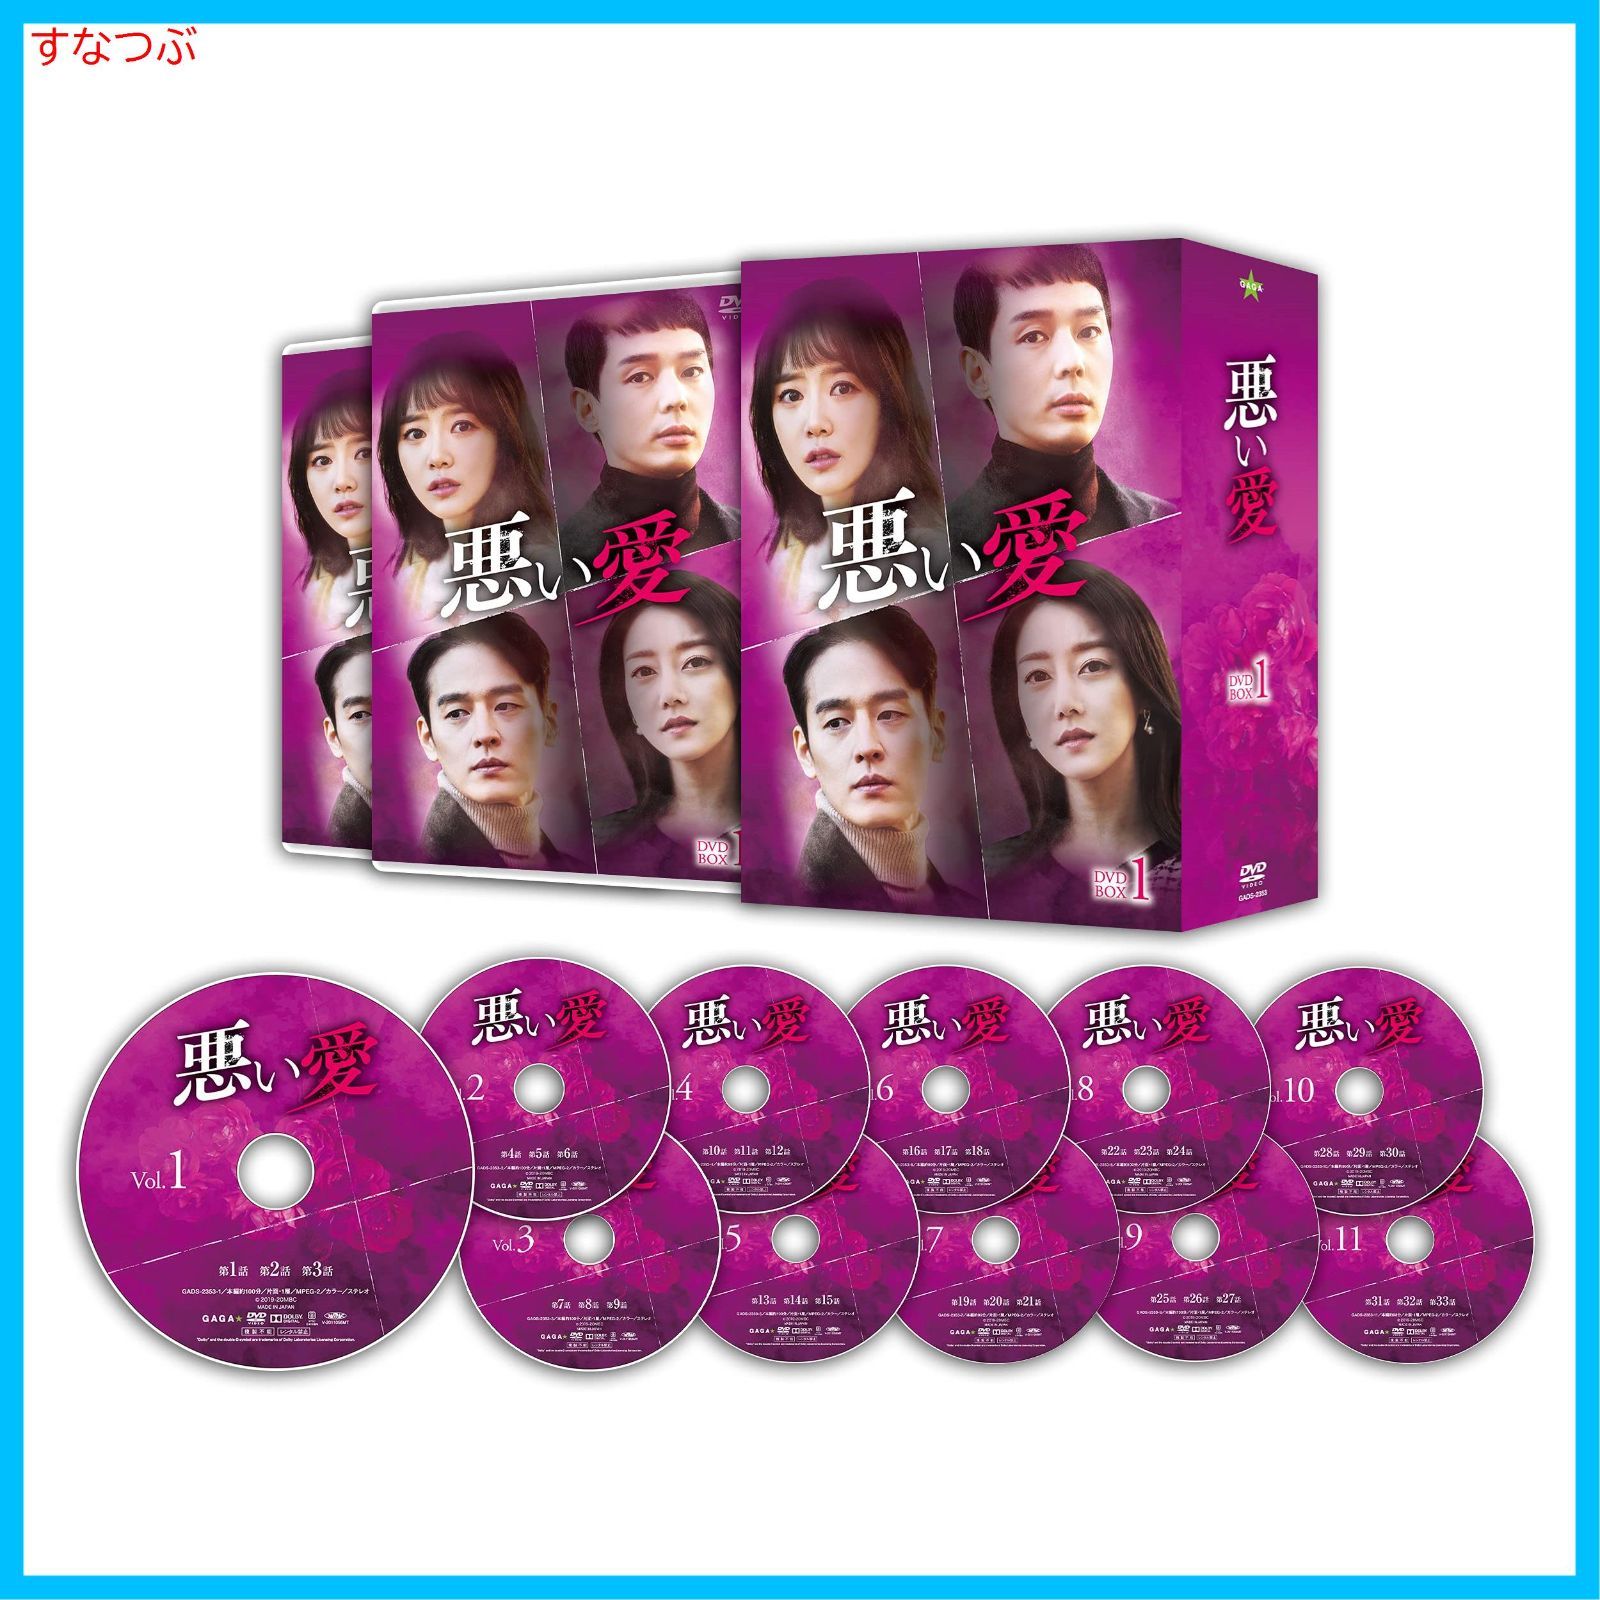 【新品未開封】悪い愛 DVD-BOX1 シン・ゴウン (出演) イ・ソンホ (出演) u0026 1 その他 形式: DVD